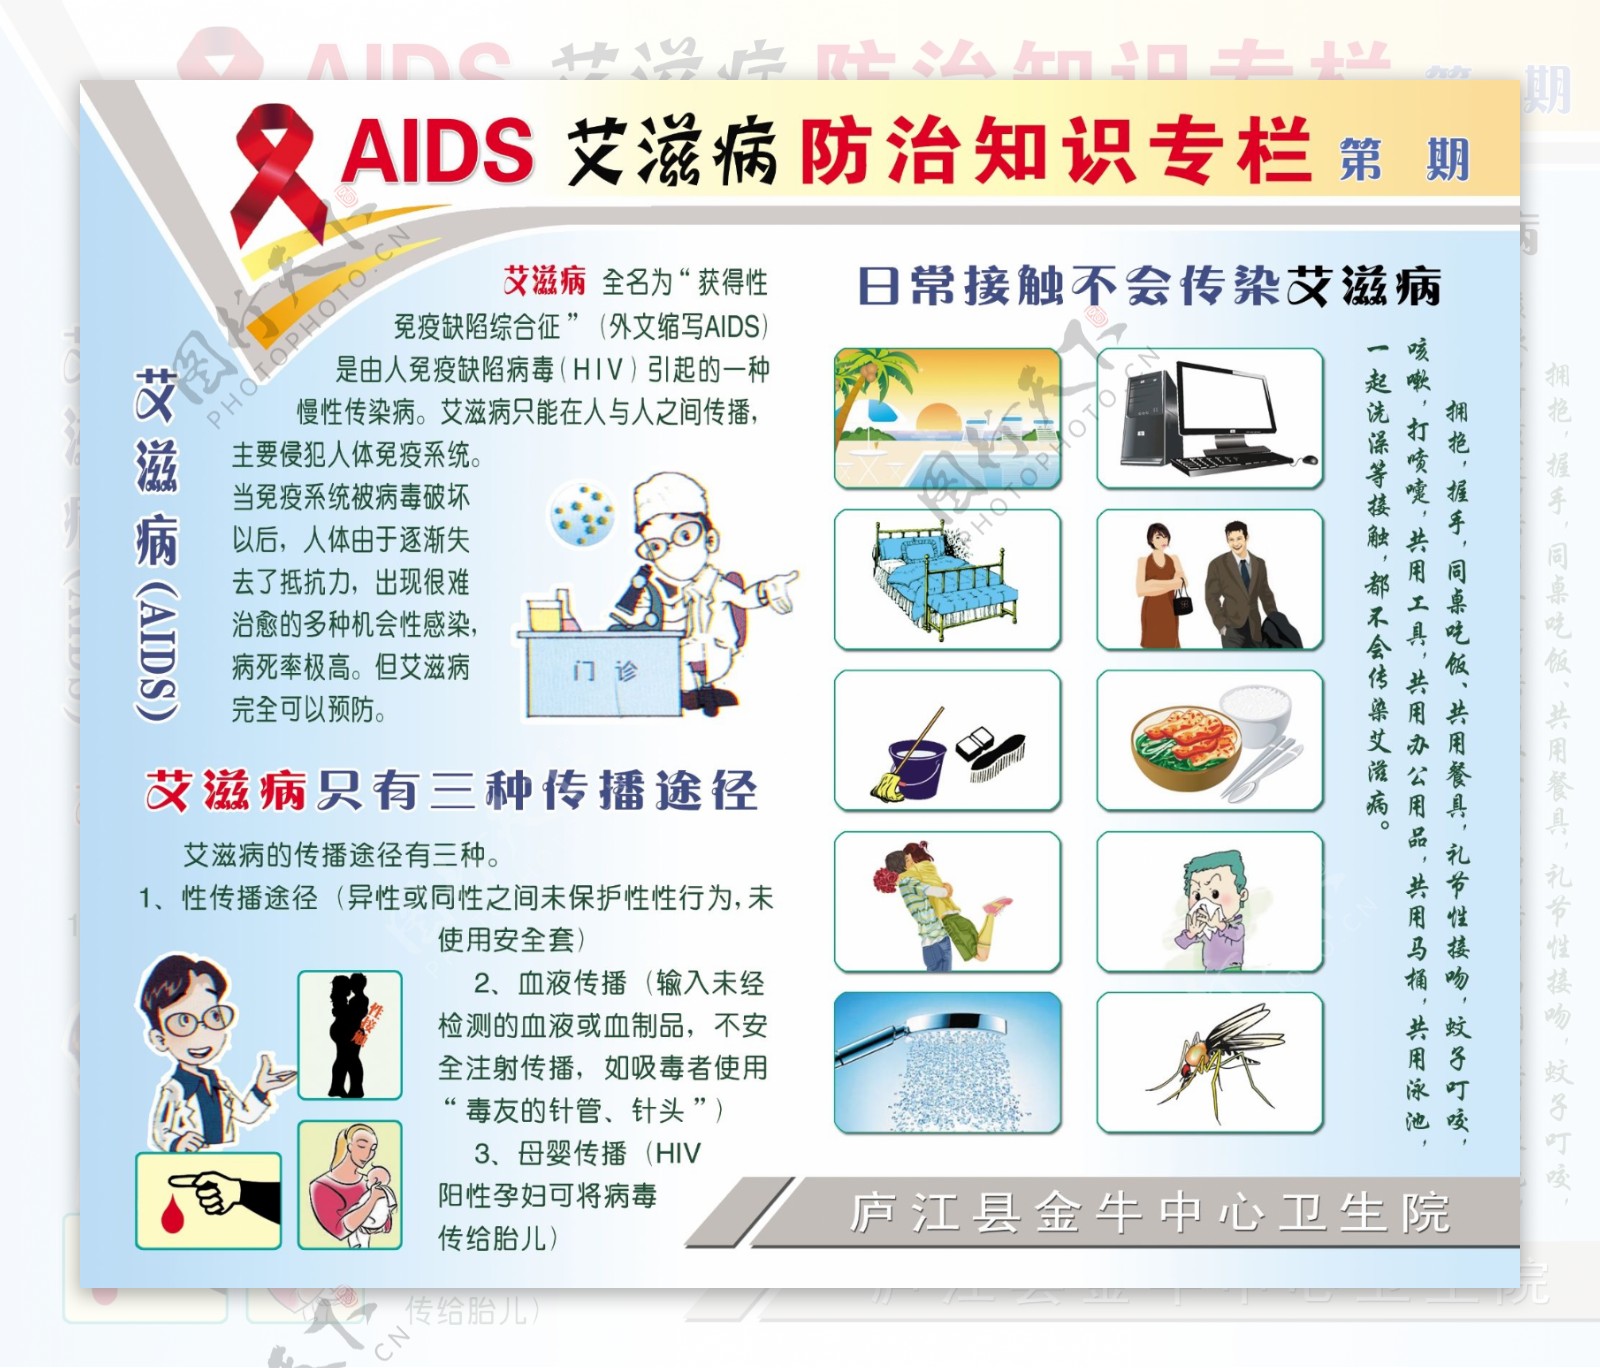 艾滋病防治宣传栏图片